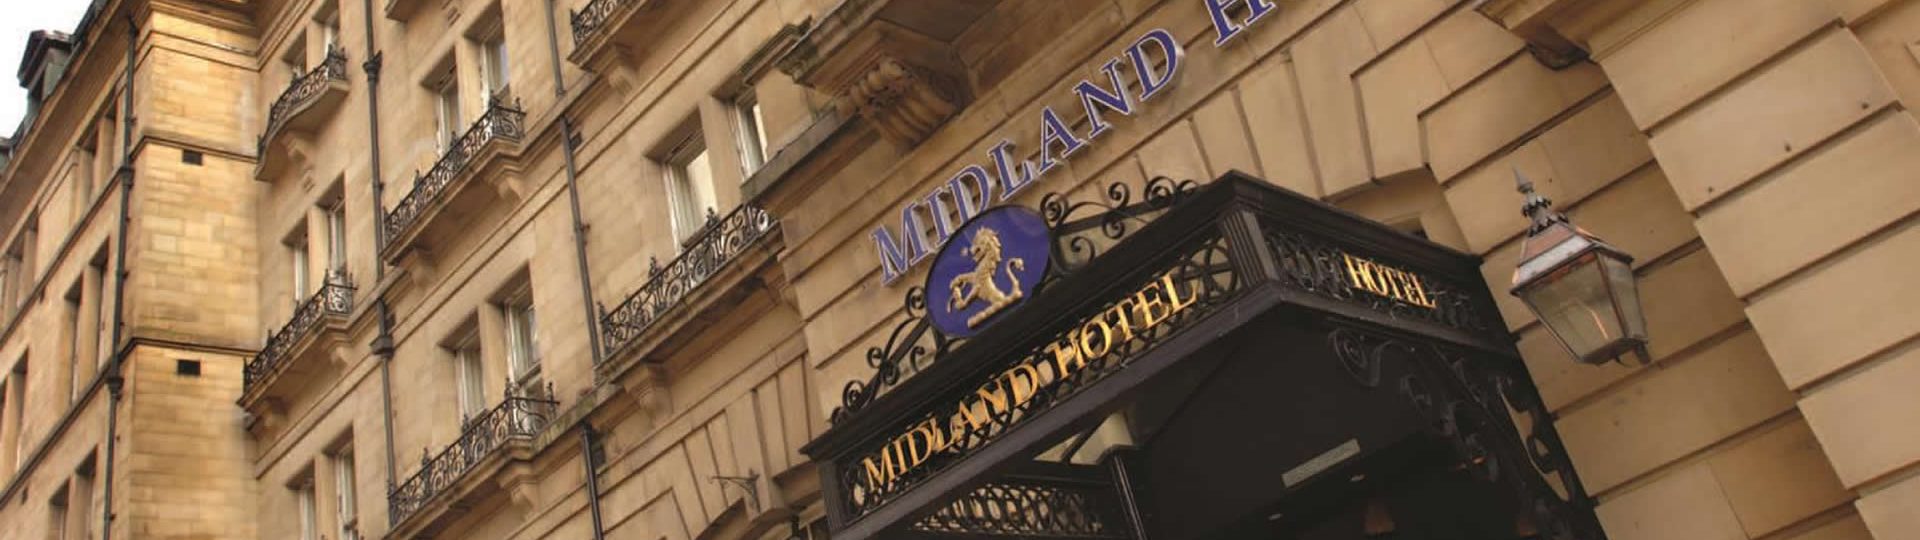 Midland Hotel Bradford, West Yorks